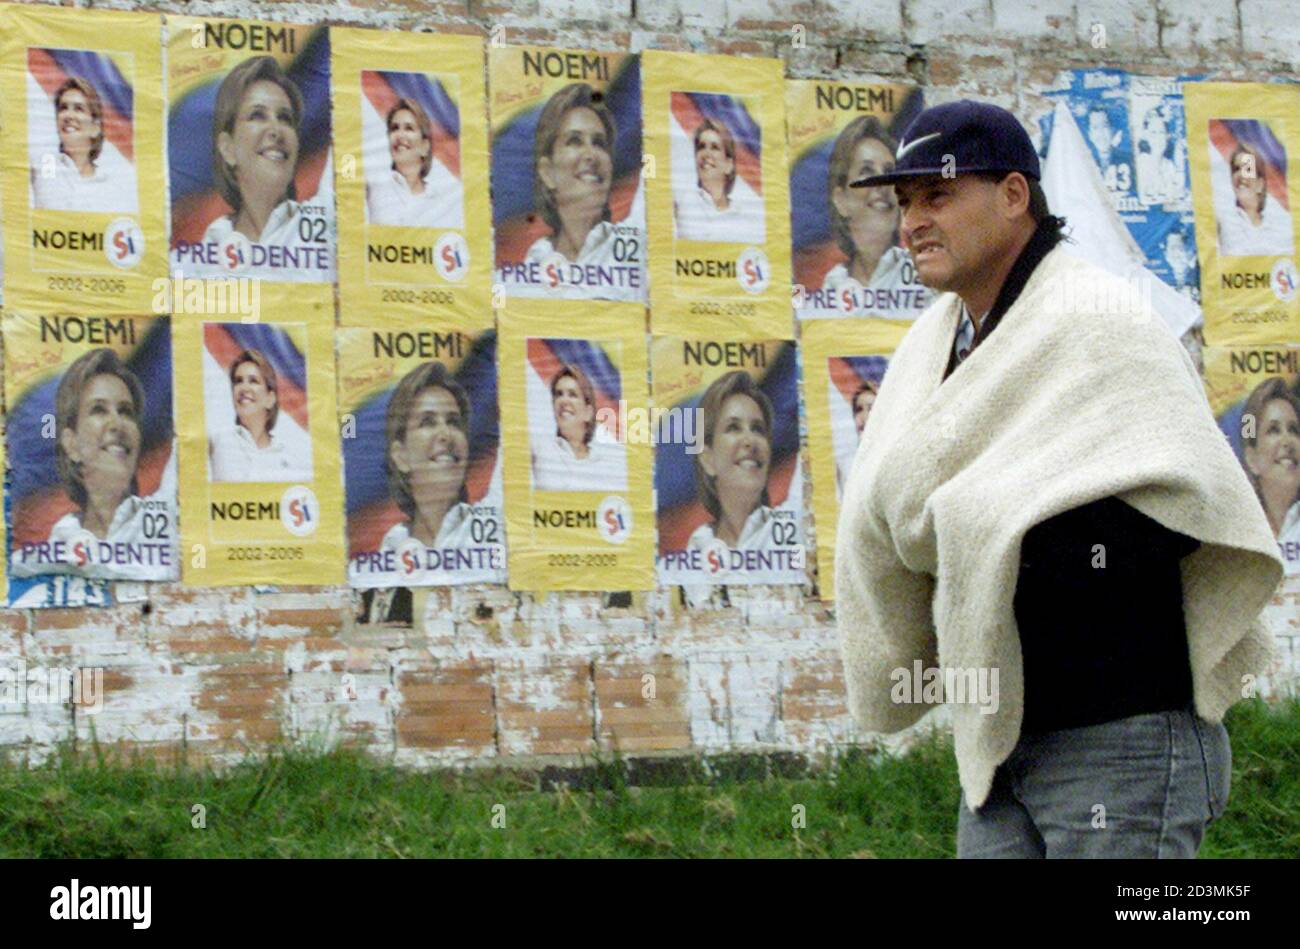 Un contadino colombiano cammina accanto a un muro con bandiere del candidato presidenziale colombiano Noemi Sanin a Guasca, vicino Bogotà, 21 maggio 2002. Le elezioni presidenziali colombiane si terranno il 26 maggio. REUTERS/Eliana Aponte EA/MMR Foto Stock